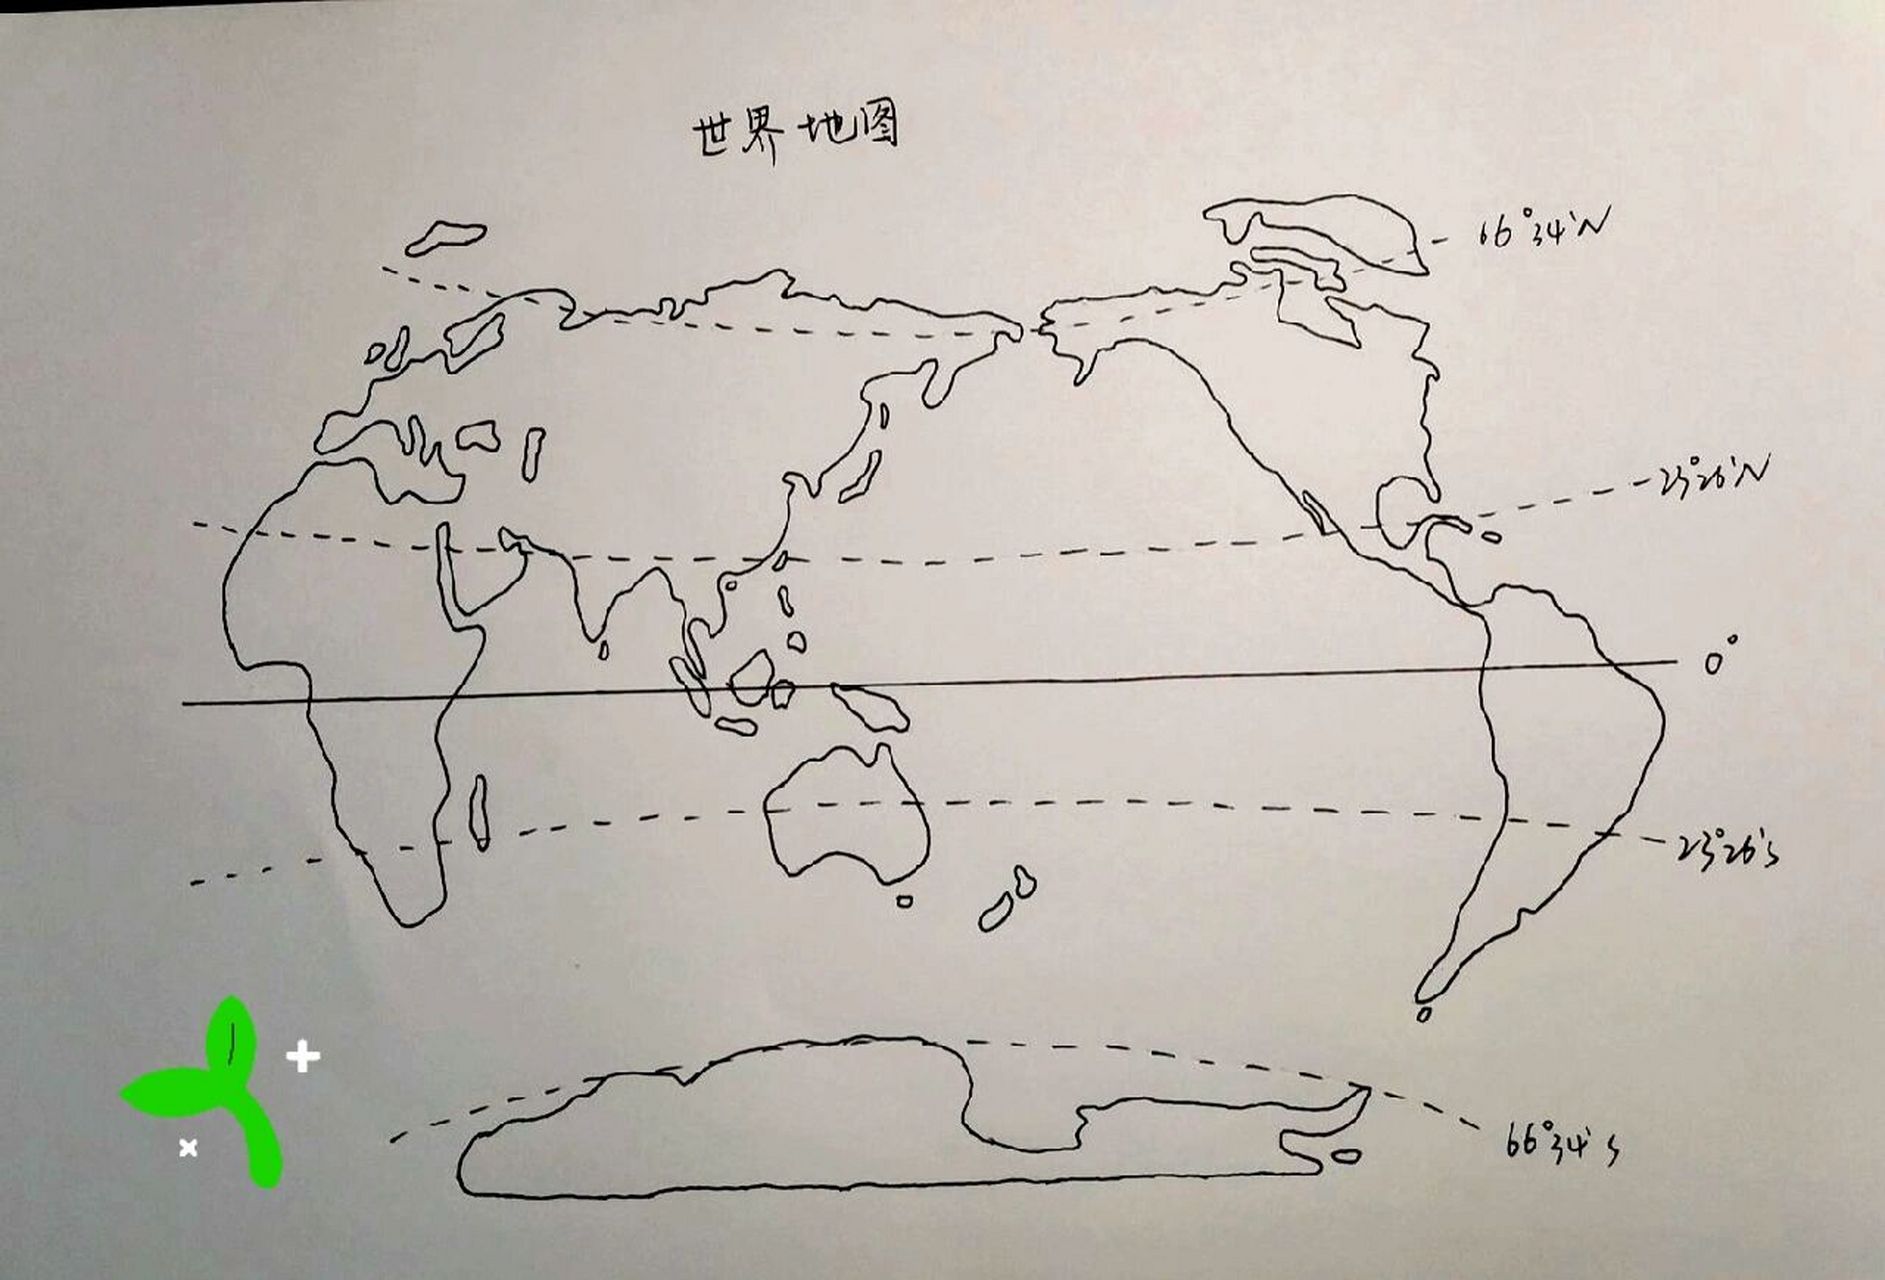 166工具:临摹纸一张,世界地图(a4大小)一张,a4纸一张,黑笔一支,